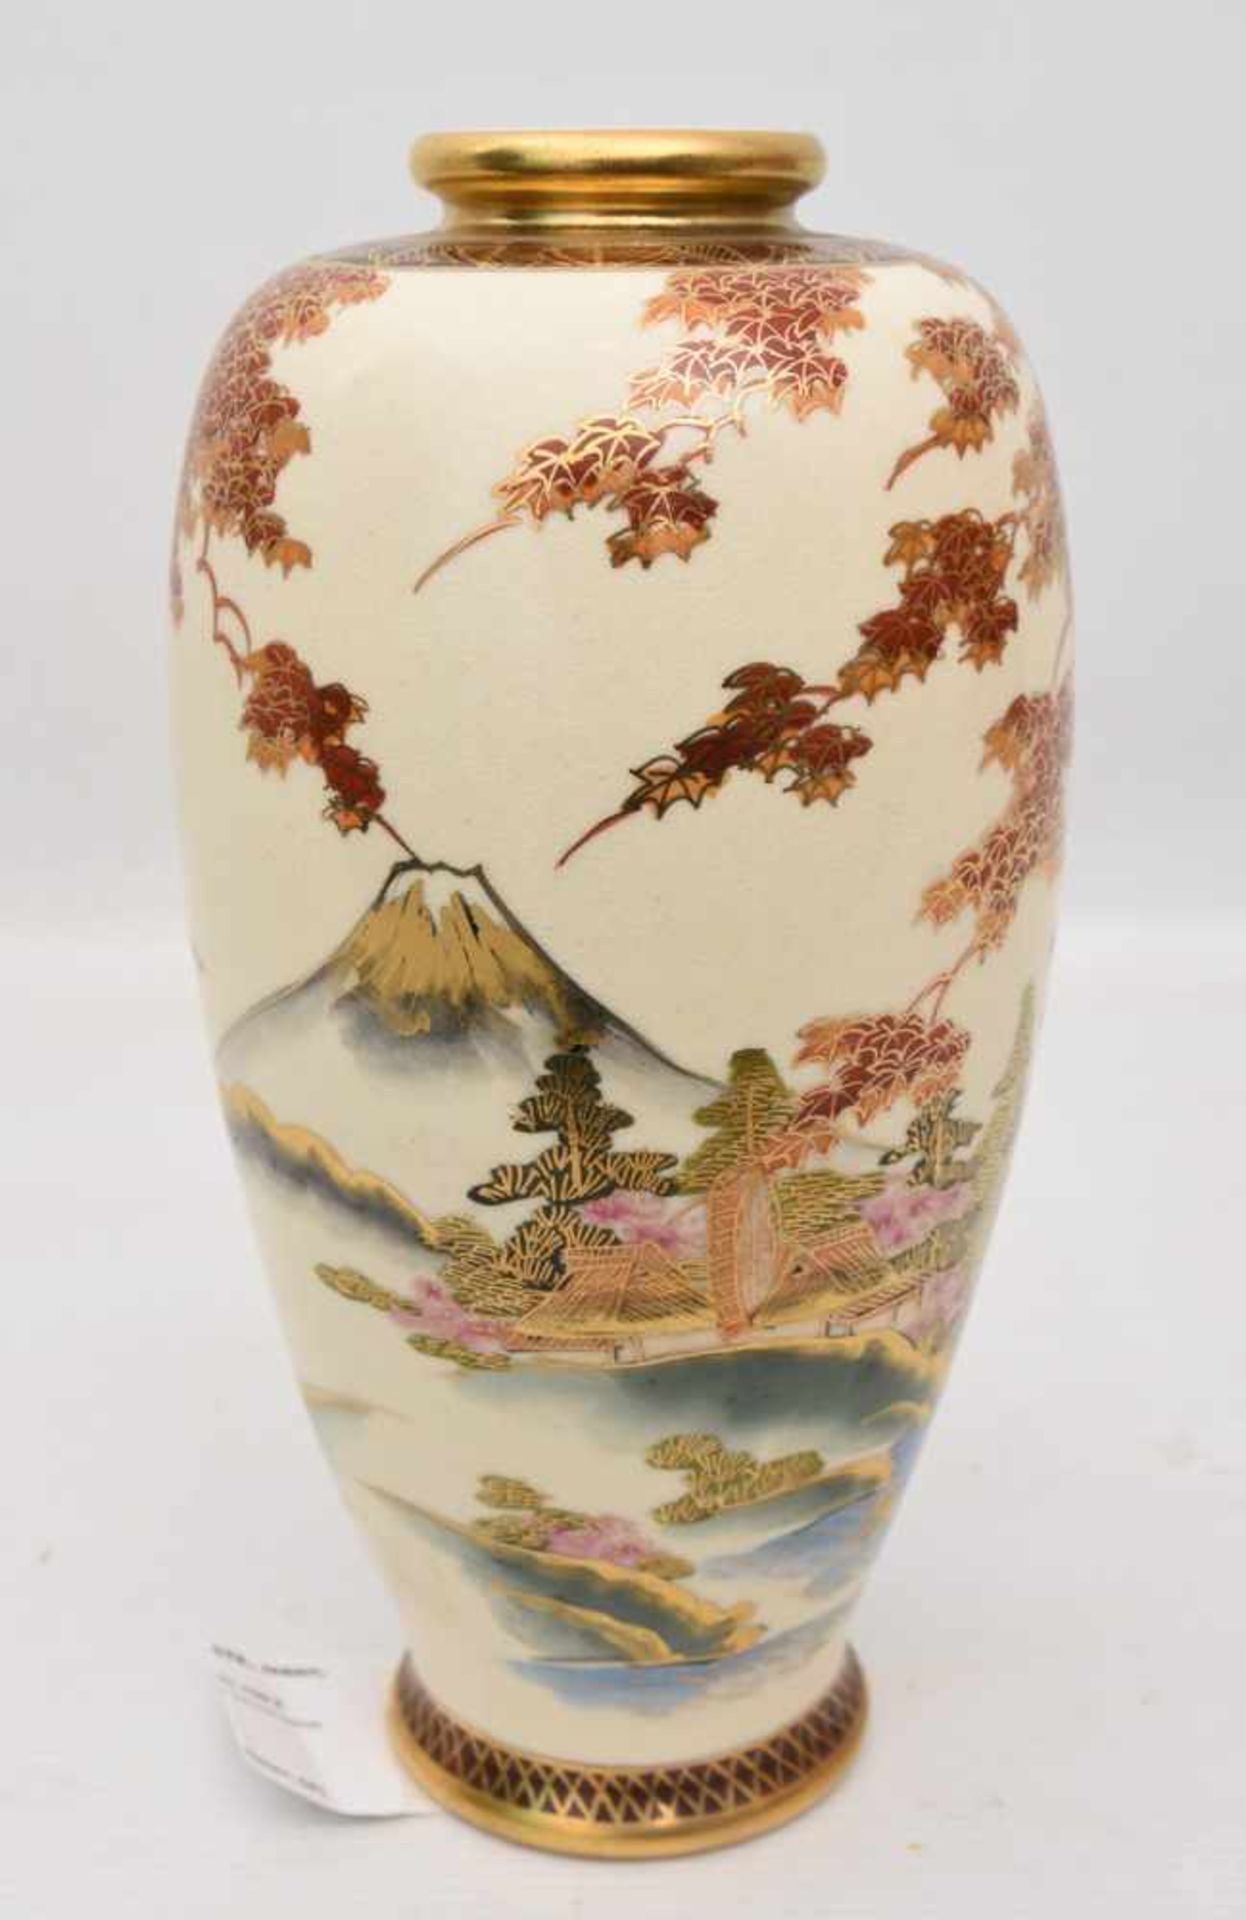 JAPANISCHE VASE IM SATSUMA STIL, Japan, wohl 19./20. JhSeht gut erhaltene Vase mit Landschaftsdekor. - Image 4 of 6